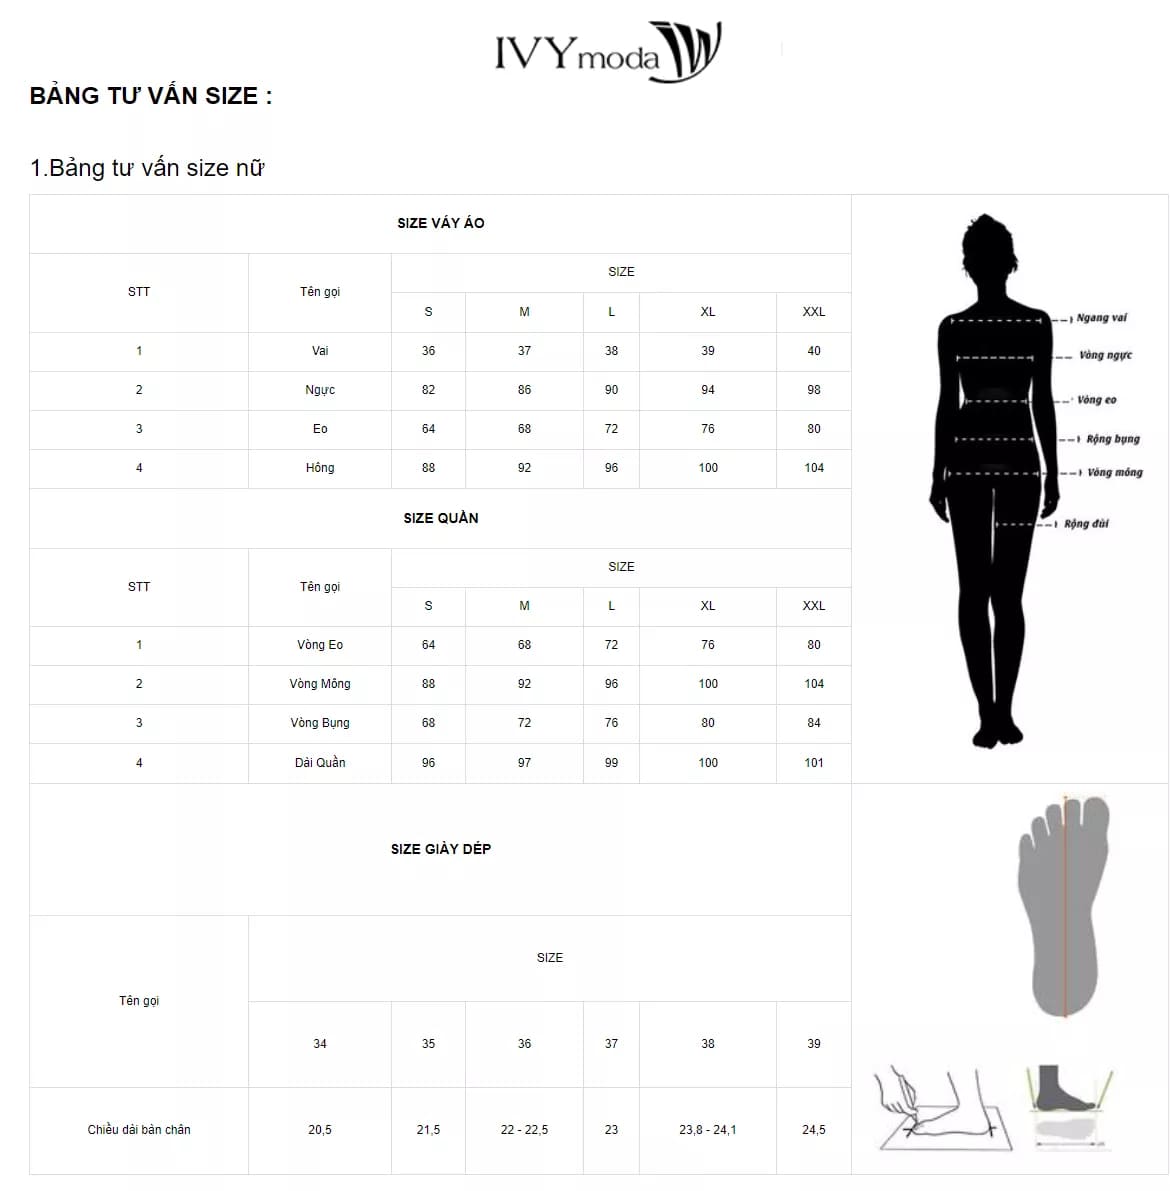 Bảng thông số size váy quần nữ thương hiệu IVY Moda 